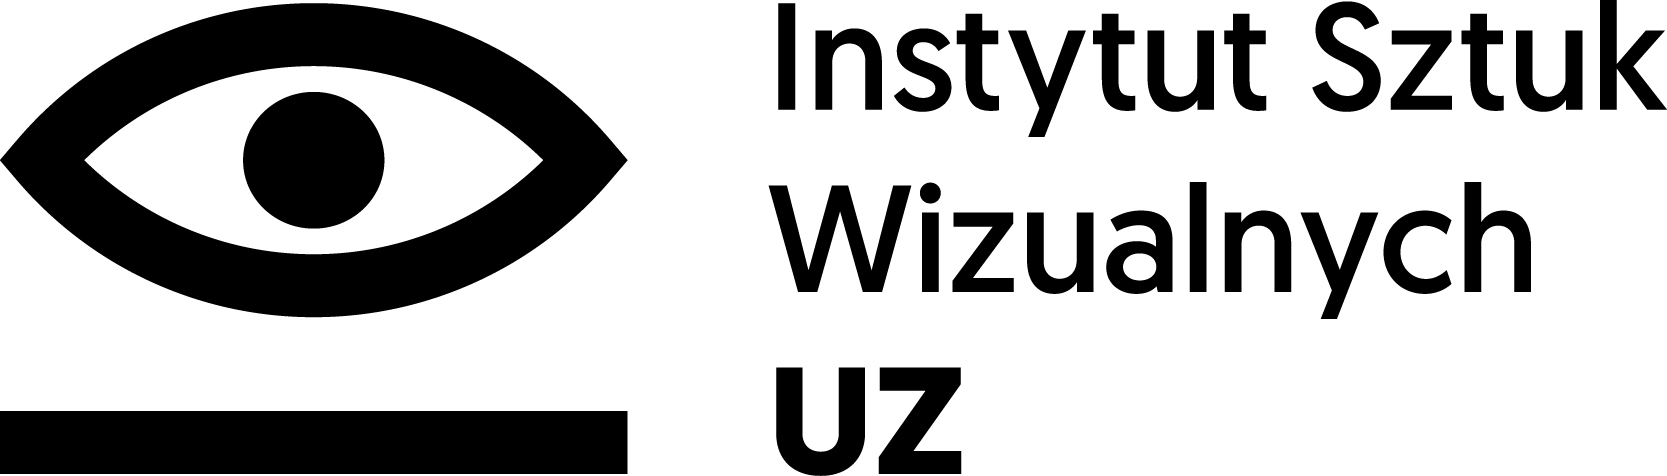 logo ISW_czarne_druk.jpg